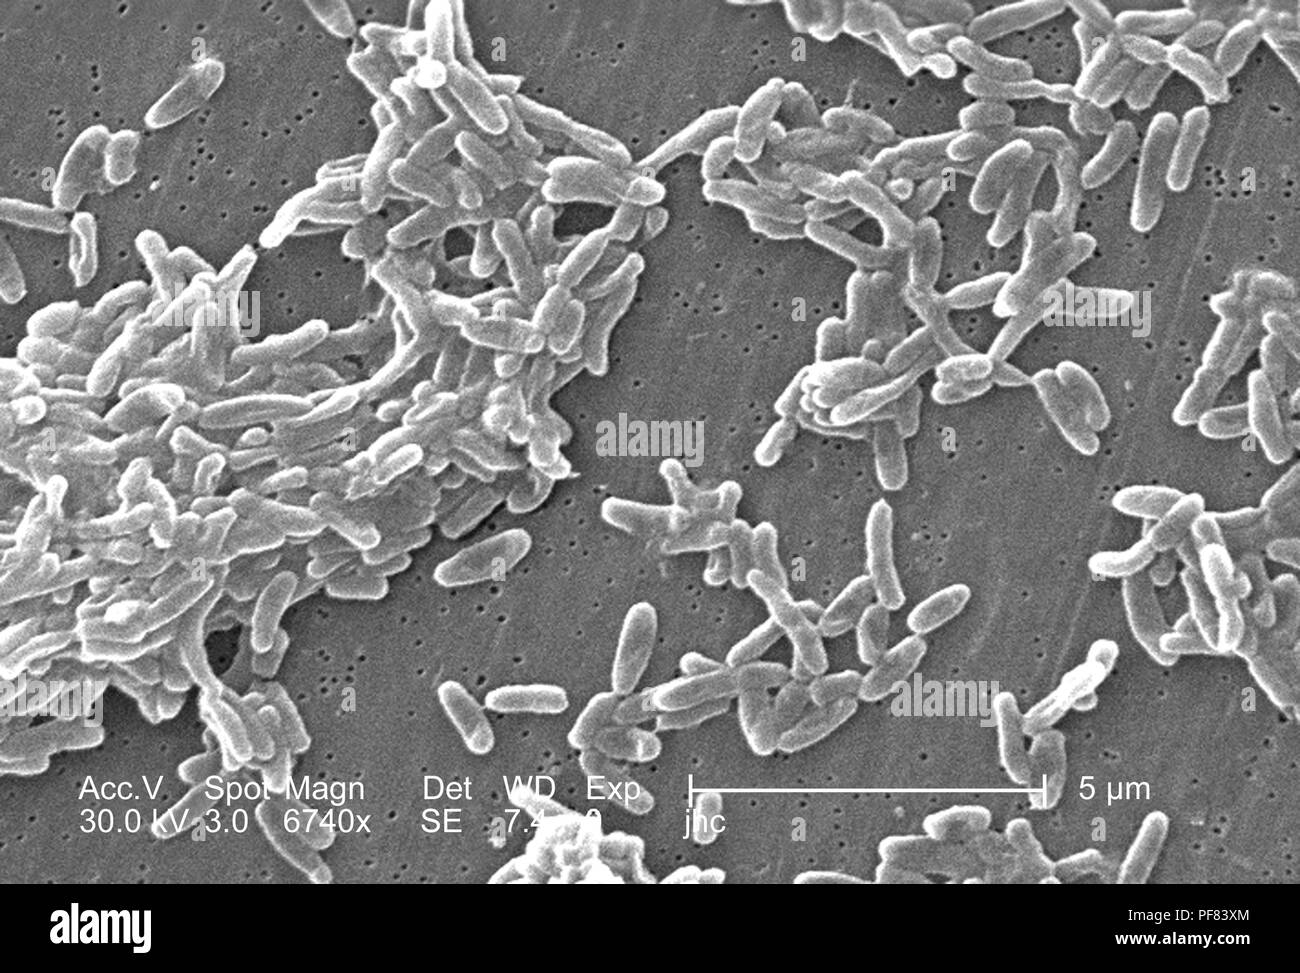 Raggruppamento di Ralstonia mannitolilytica batteri hanno rivelato in 6740x di scansione ingrandita al microscopio elettronico (SEM) immagine, 2006. Immagine cortesia di centri per il controllo delle malattie (CDC) / Judith Noble-Wang, Ph.D. () Foto Stock